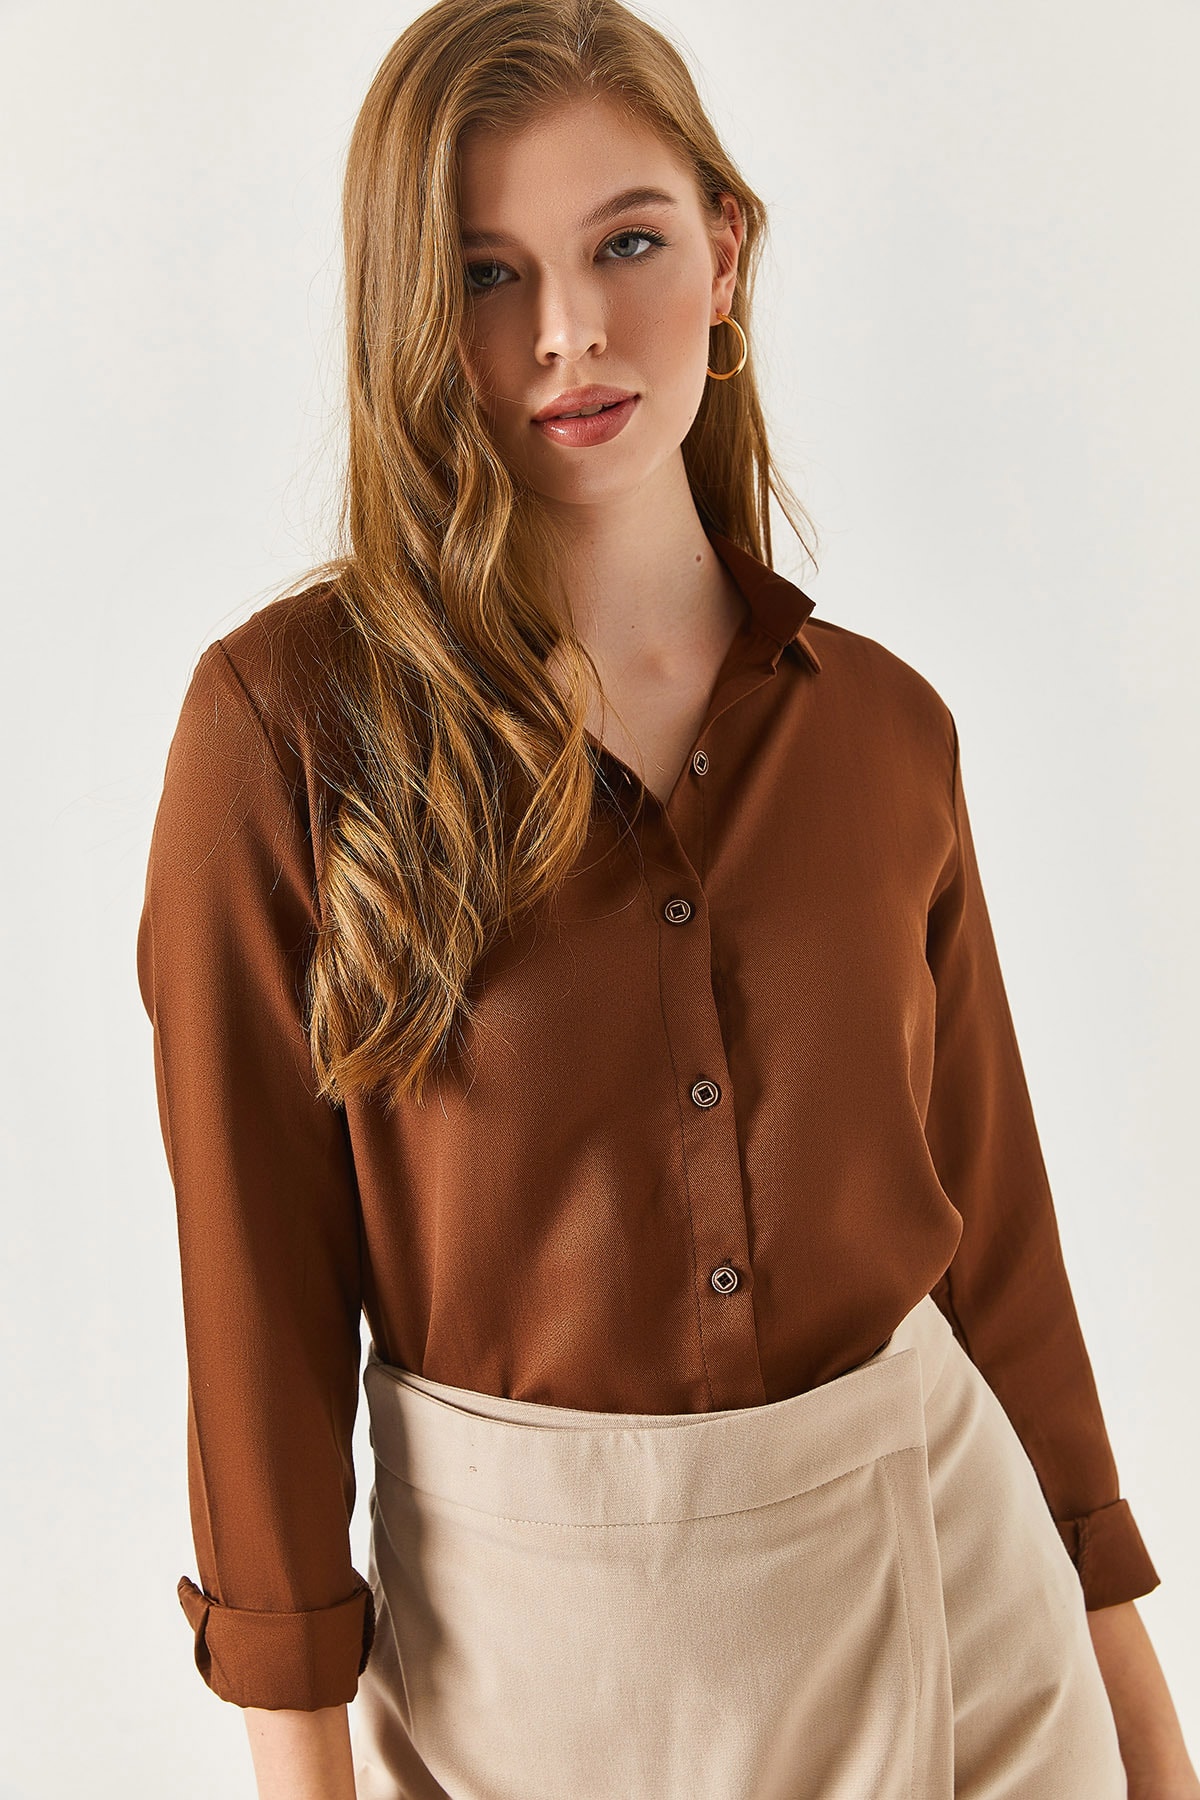 armonika Plus Size Shirt - Brown - Regular fit